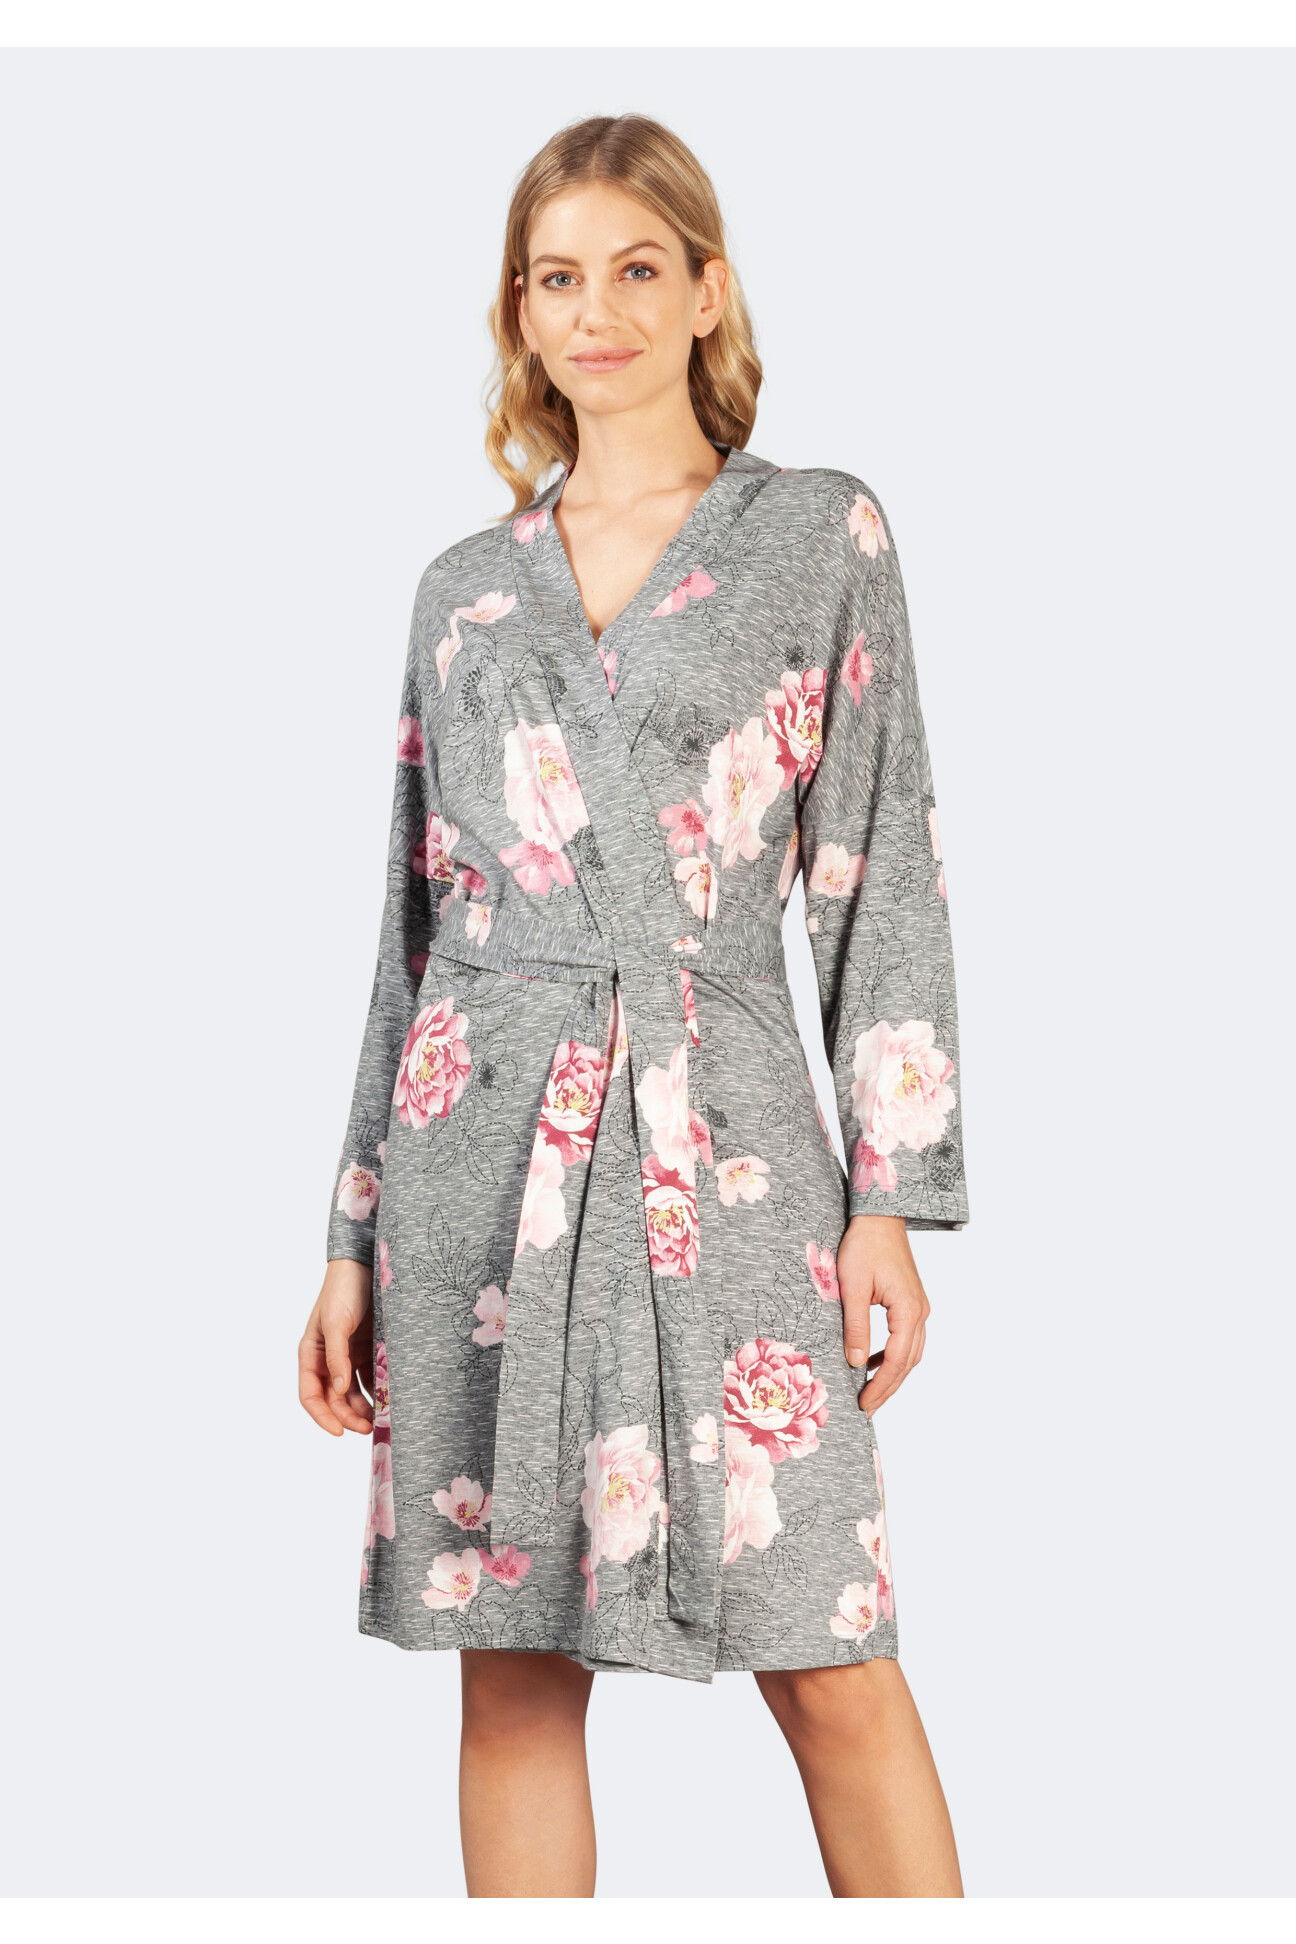 Kimono 105 cm, Premium Cotton / Tencel